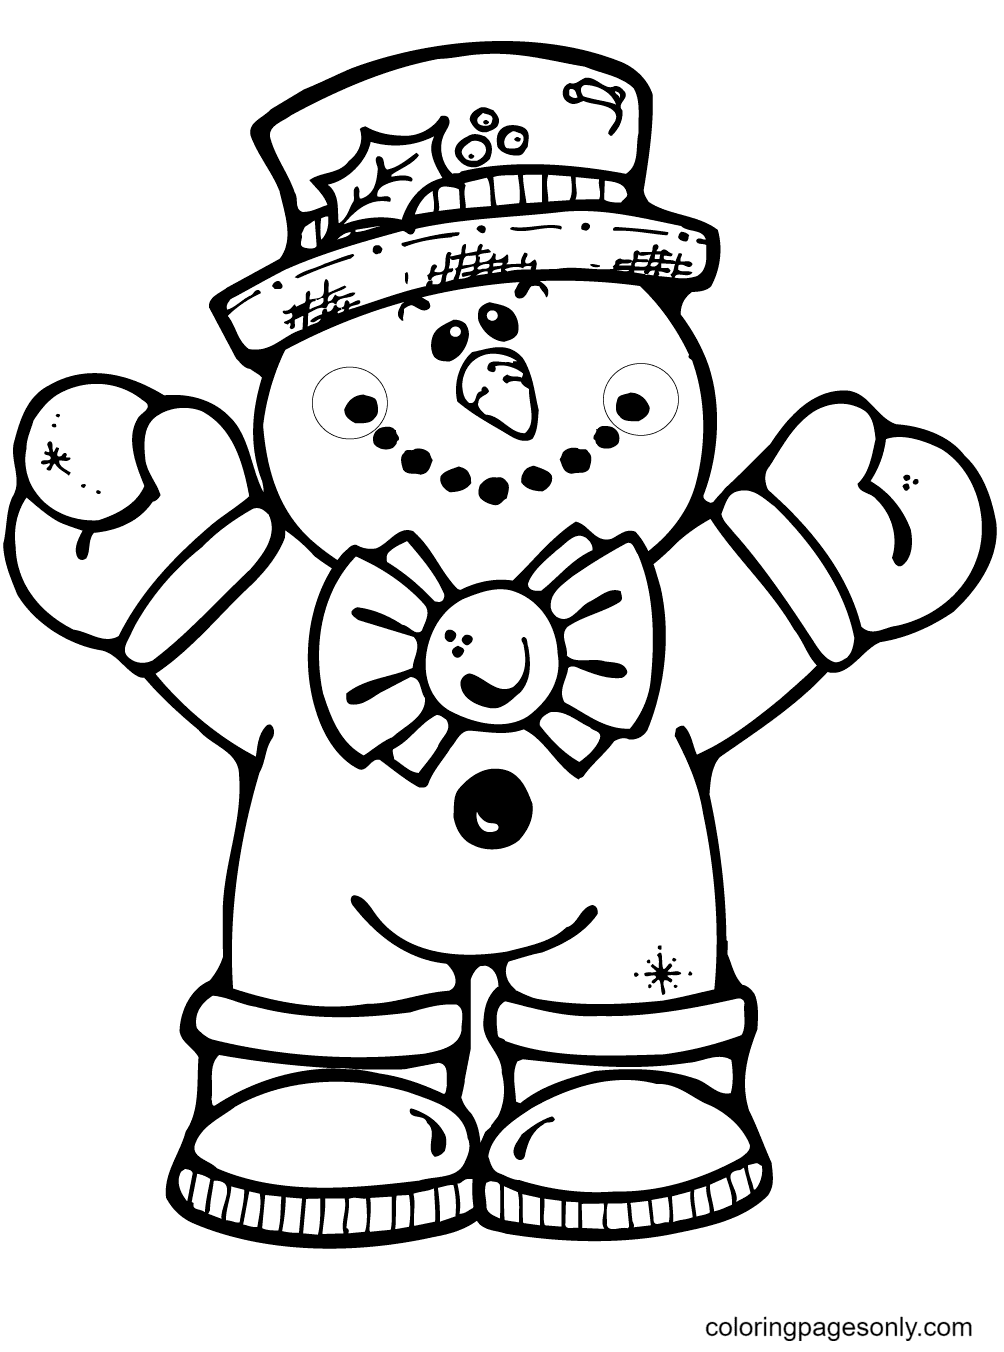 Abraçando o boneco de neve from Boneco de neve